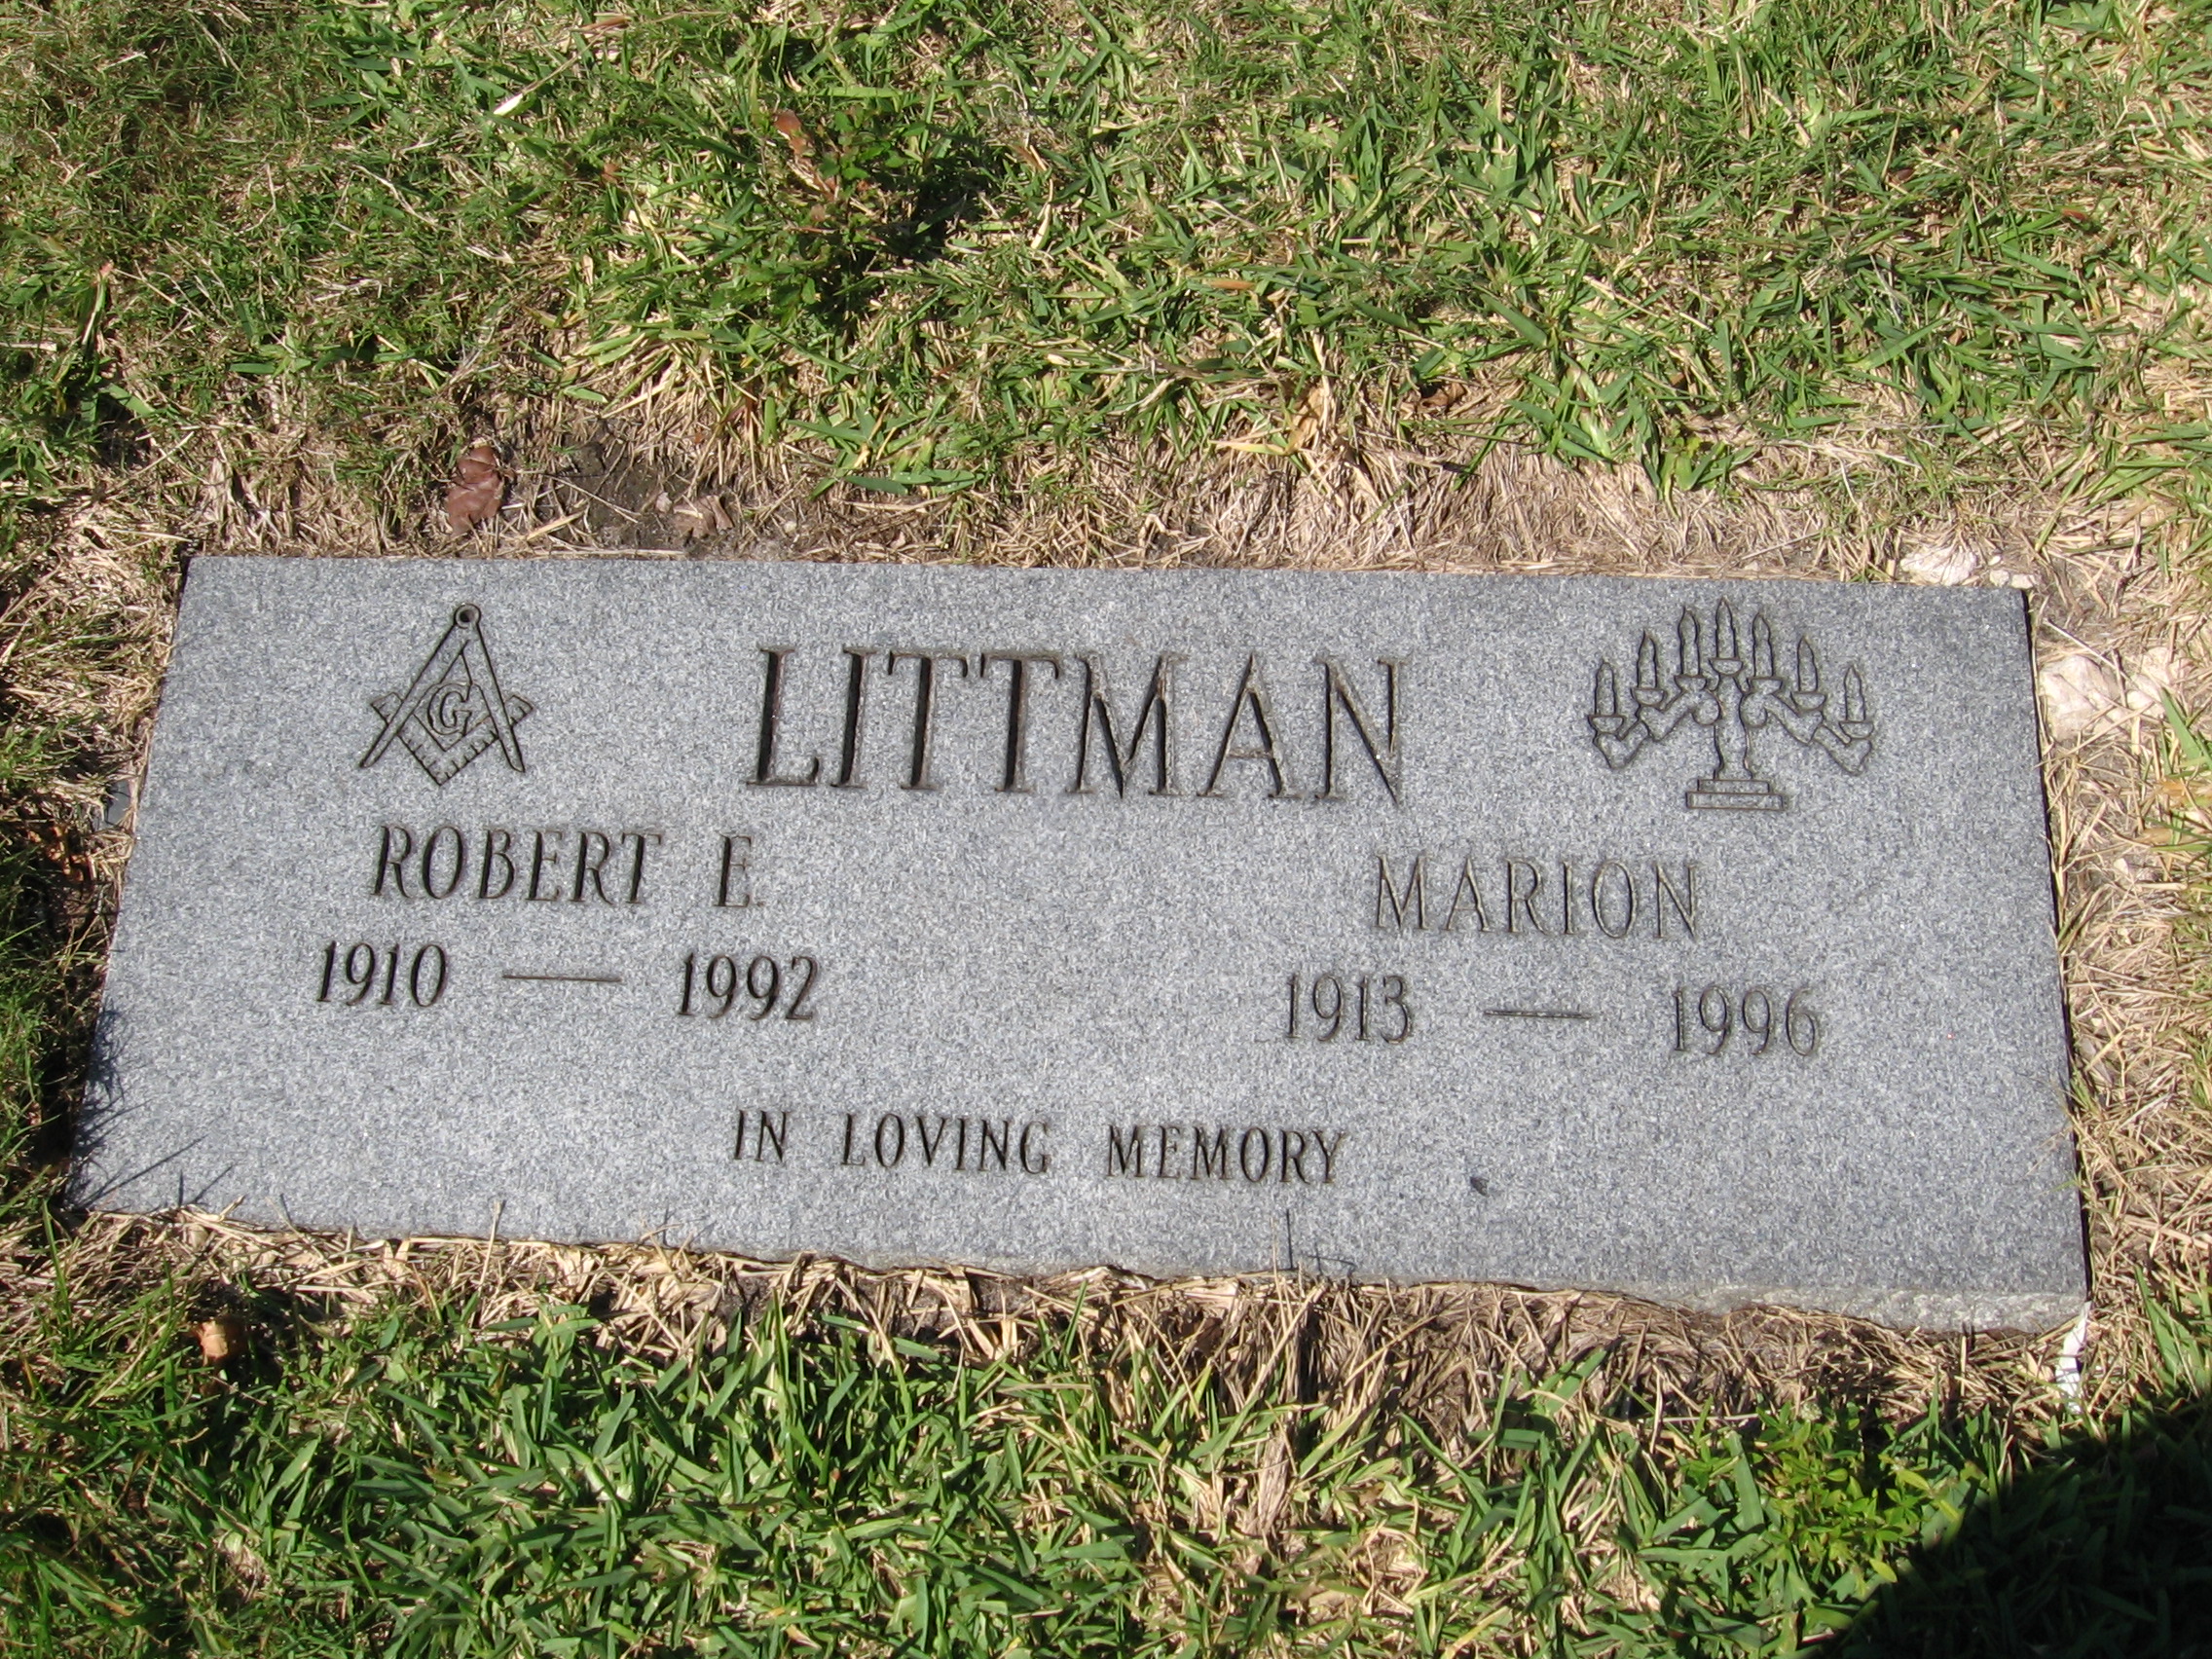 Robert E Littman